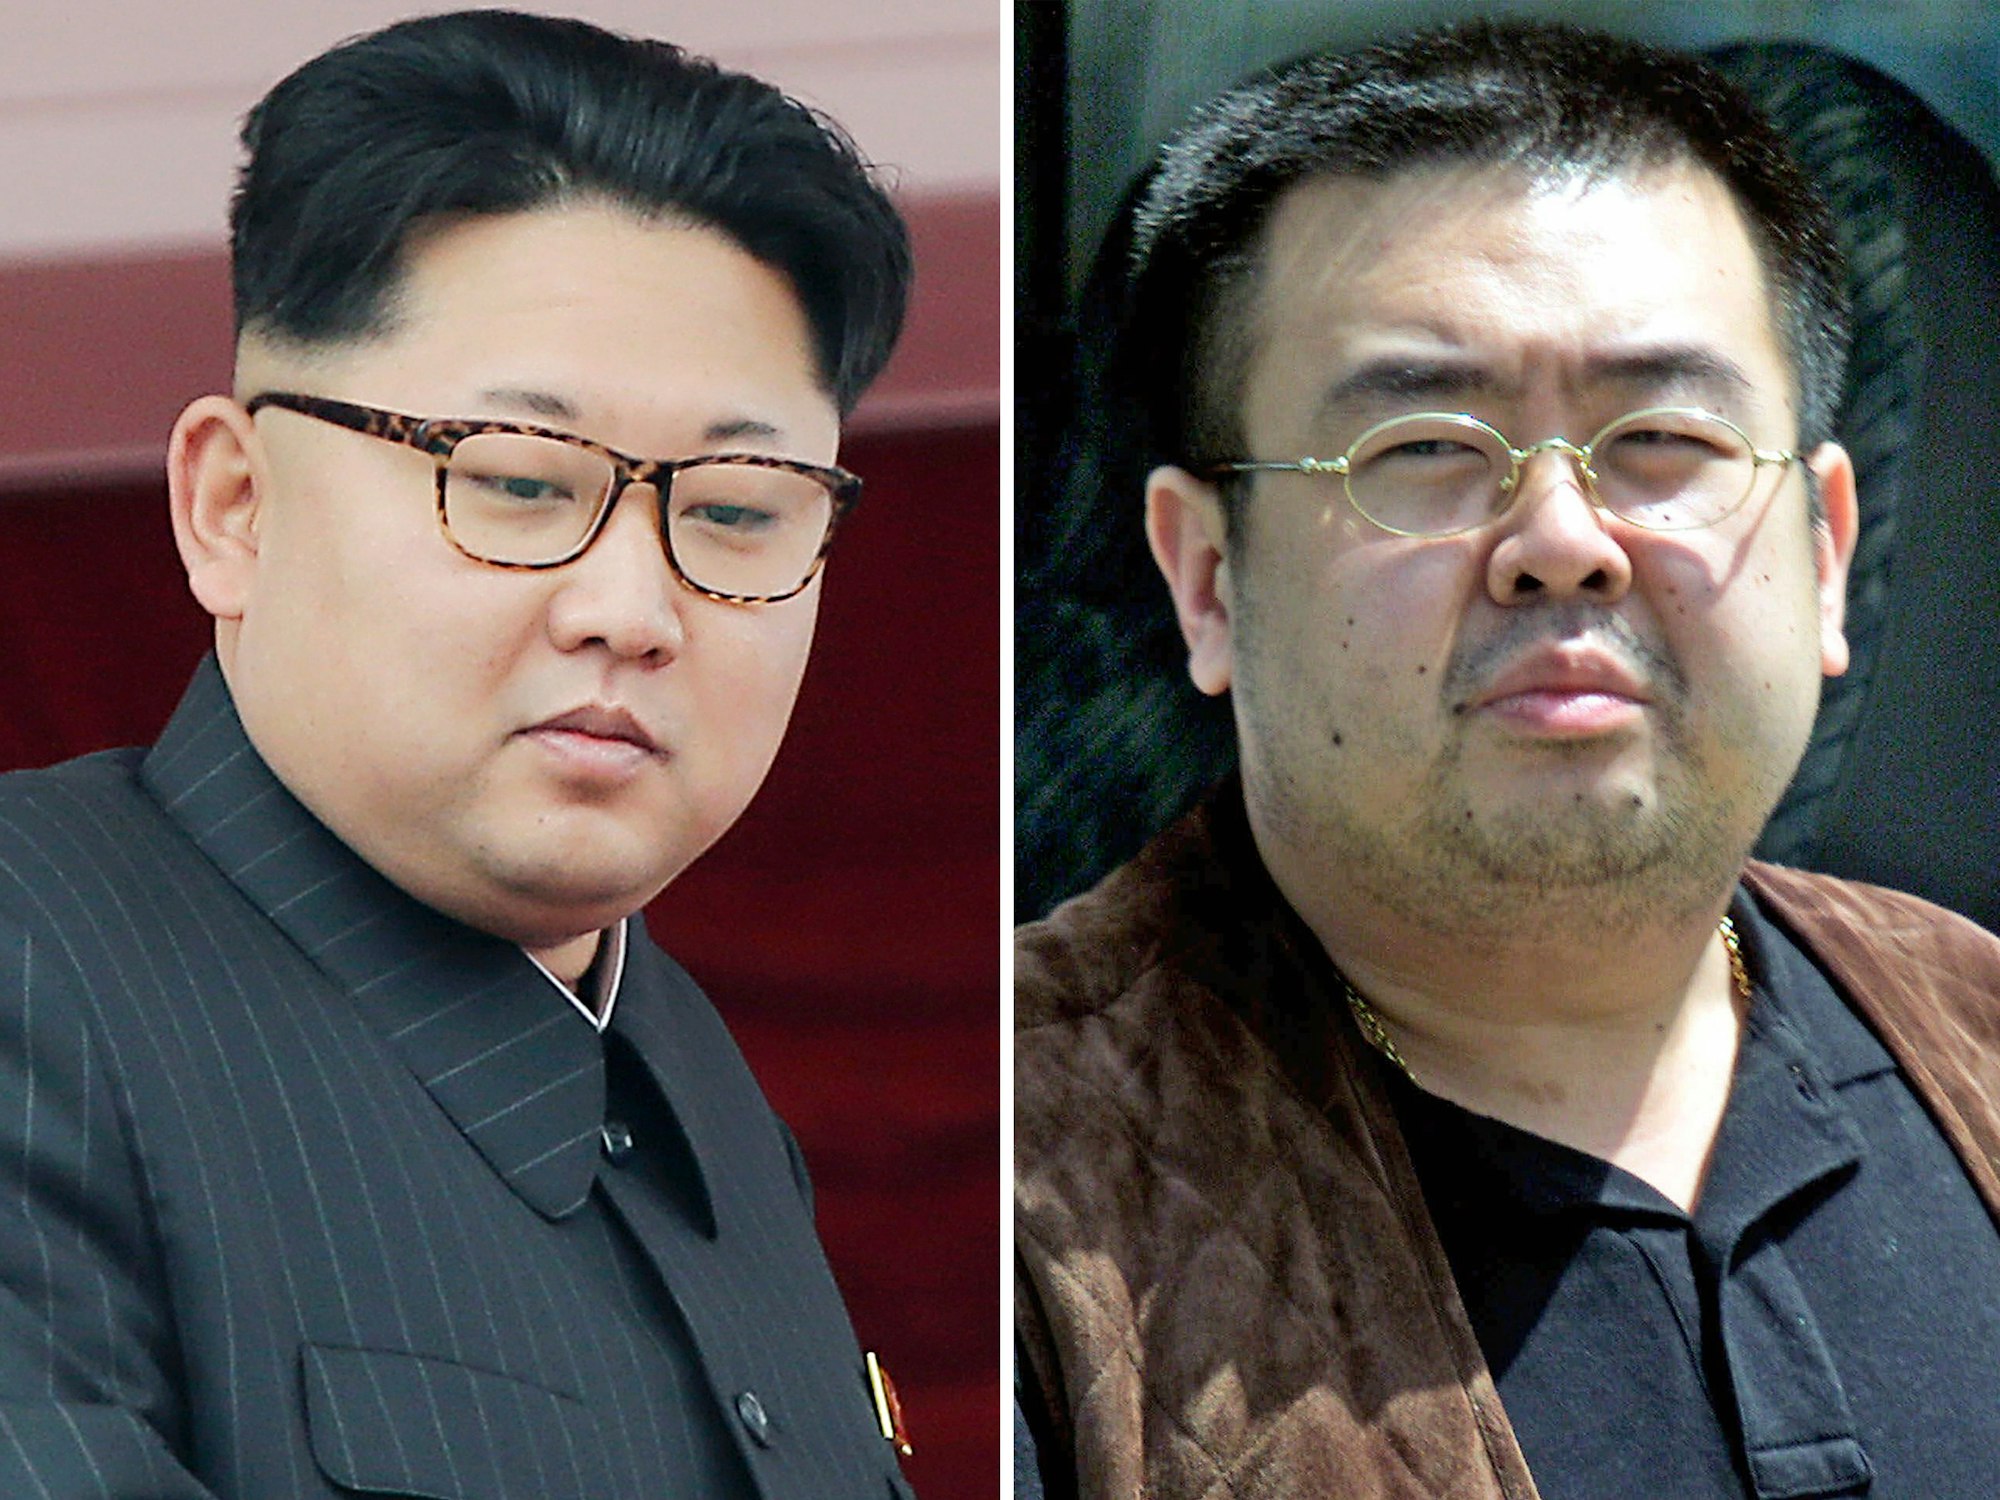 Die Bildkombo zeigt den nordkoreanischen Machthaber Kim Jong Un (l), aufgenommen am 10.05.2016 in Pyongyang (Nordkorea), sowie seinen Halbbruder Kim Jong Nam (r), aufgenommen am 04.05.2001 in Narita (Japan).